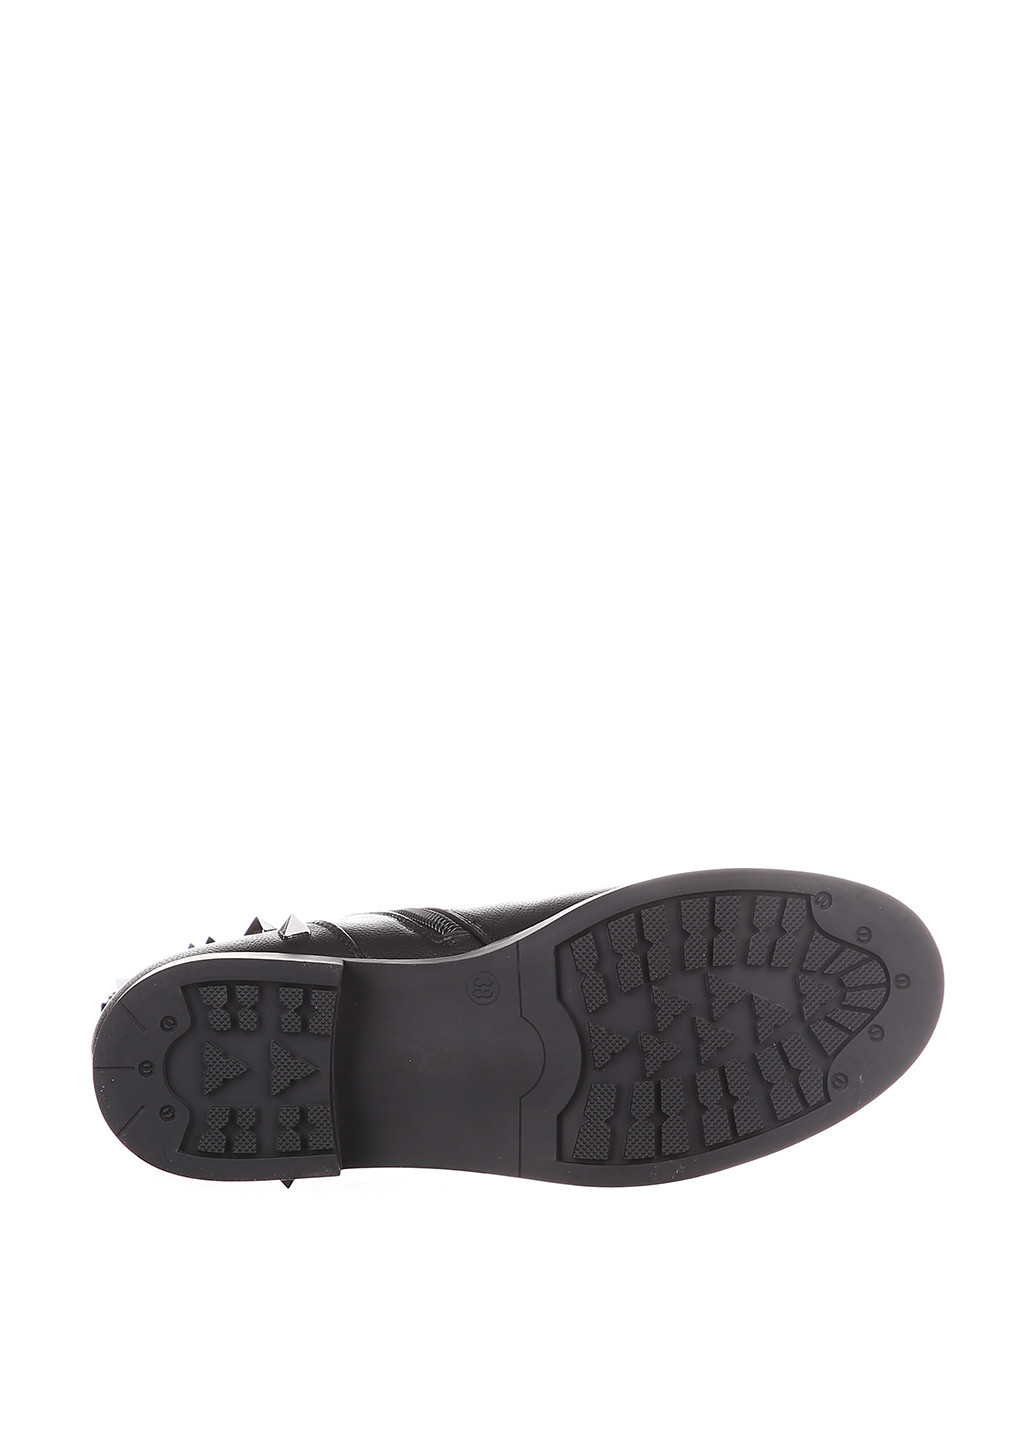 Зимние ботинки Butigo с пряжкой, с шипами из искусственной кожи